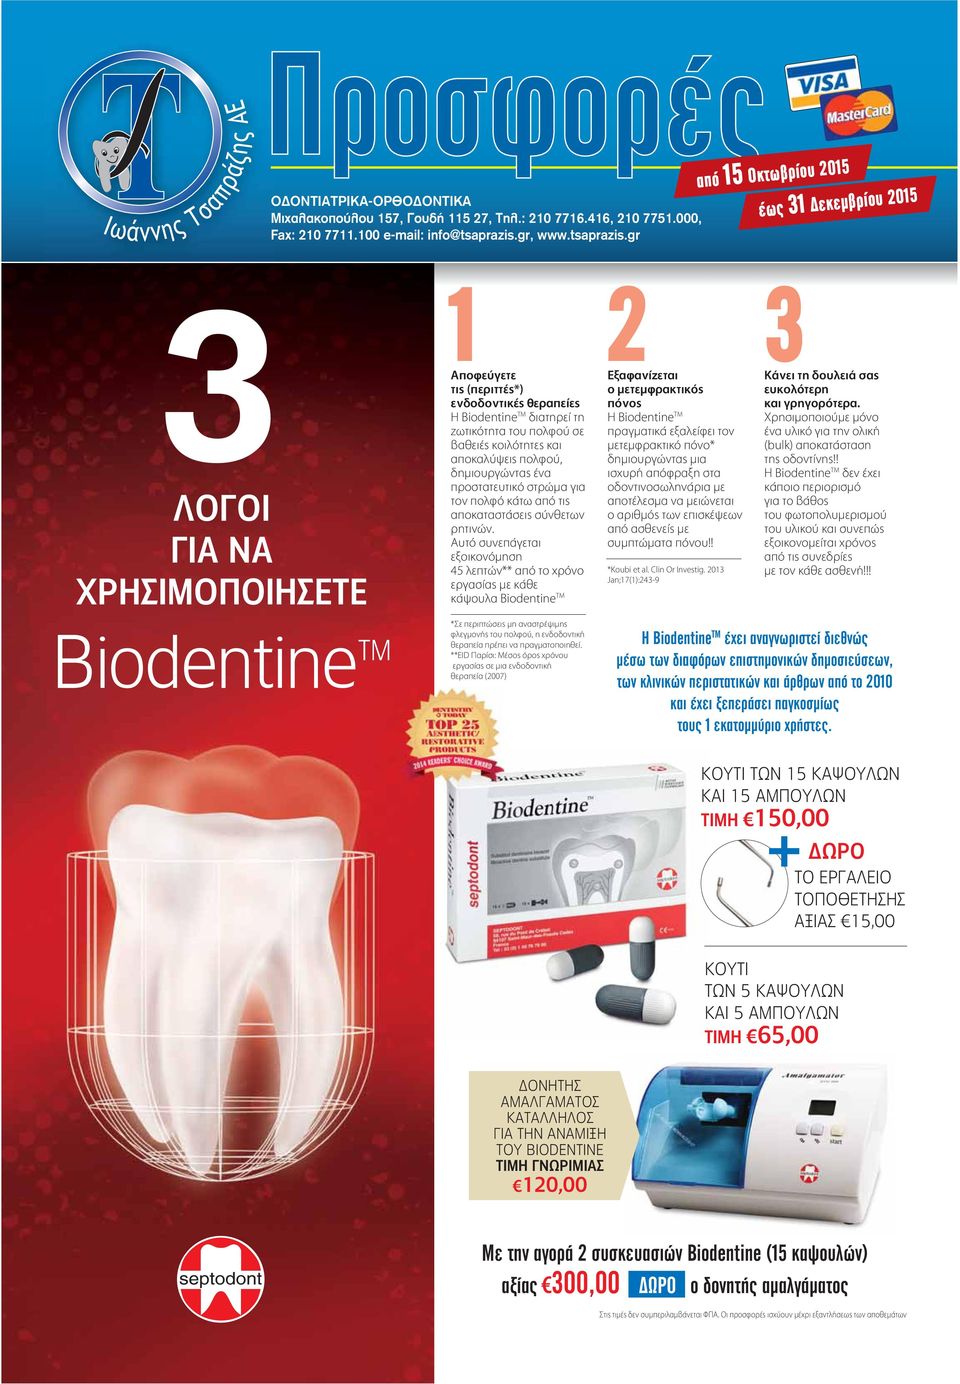 gr από 15 Οκτωβρίου 2015 έως 31 Δεκεμβρίου 2015 3 1 ΛΟΓΟΙ ΓΙΑ ΝΑ ΧΡΗΣΙΜΟΠΟΙΗΣΕΤΕ Biodentine TM Αποφεύγετε τις (περιττές*) ενδοδοντικές θεραπείες Η Biodentine TM διατηρεί τη ζωτικότητα του πολφού σε